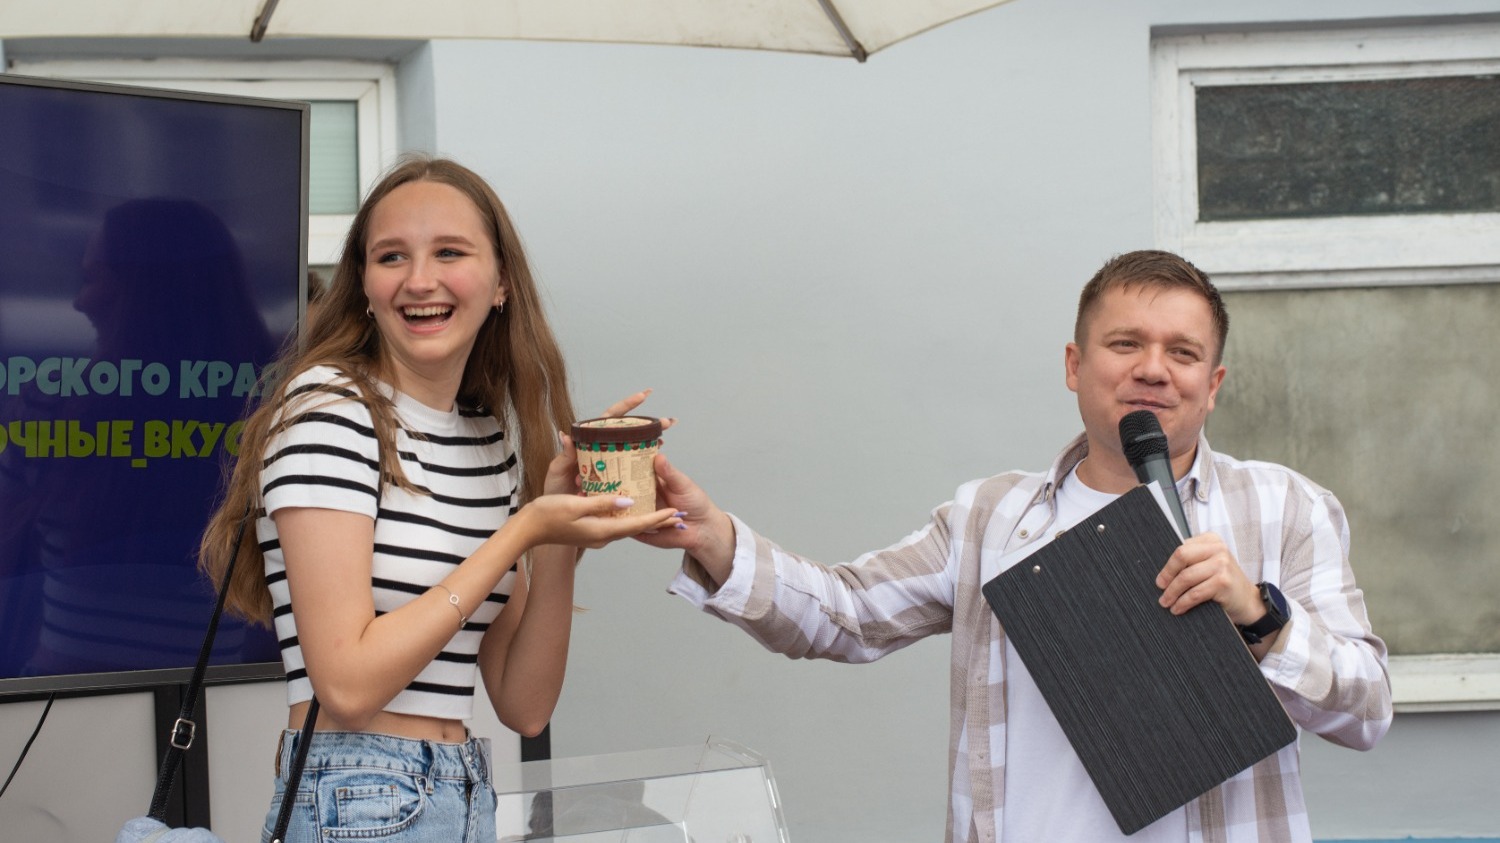 Новый дом "Урсы": Владивостокская фабрика мороженого открыла первый фирменный магазин